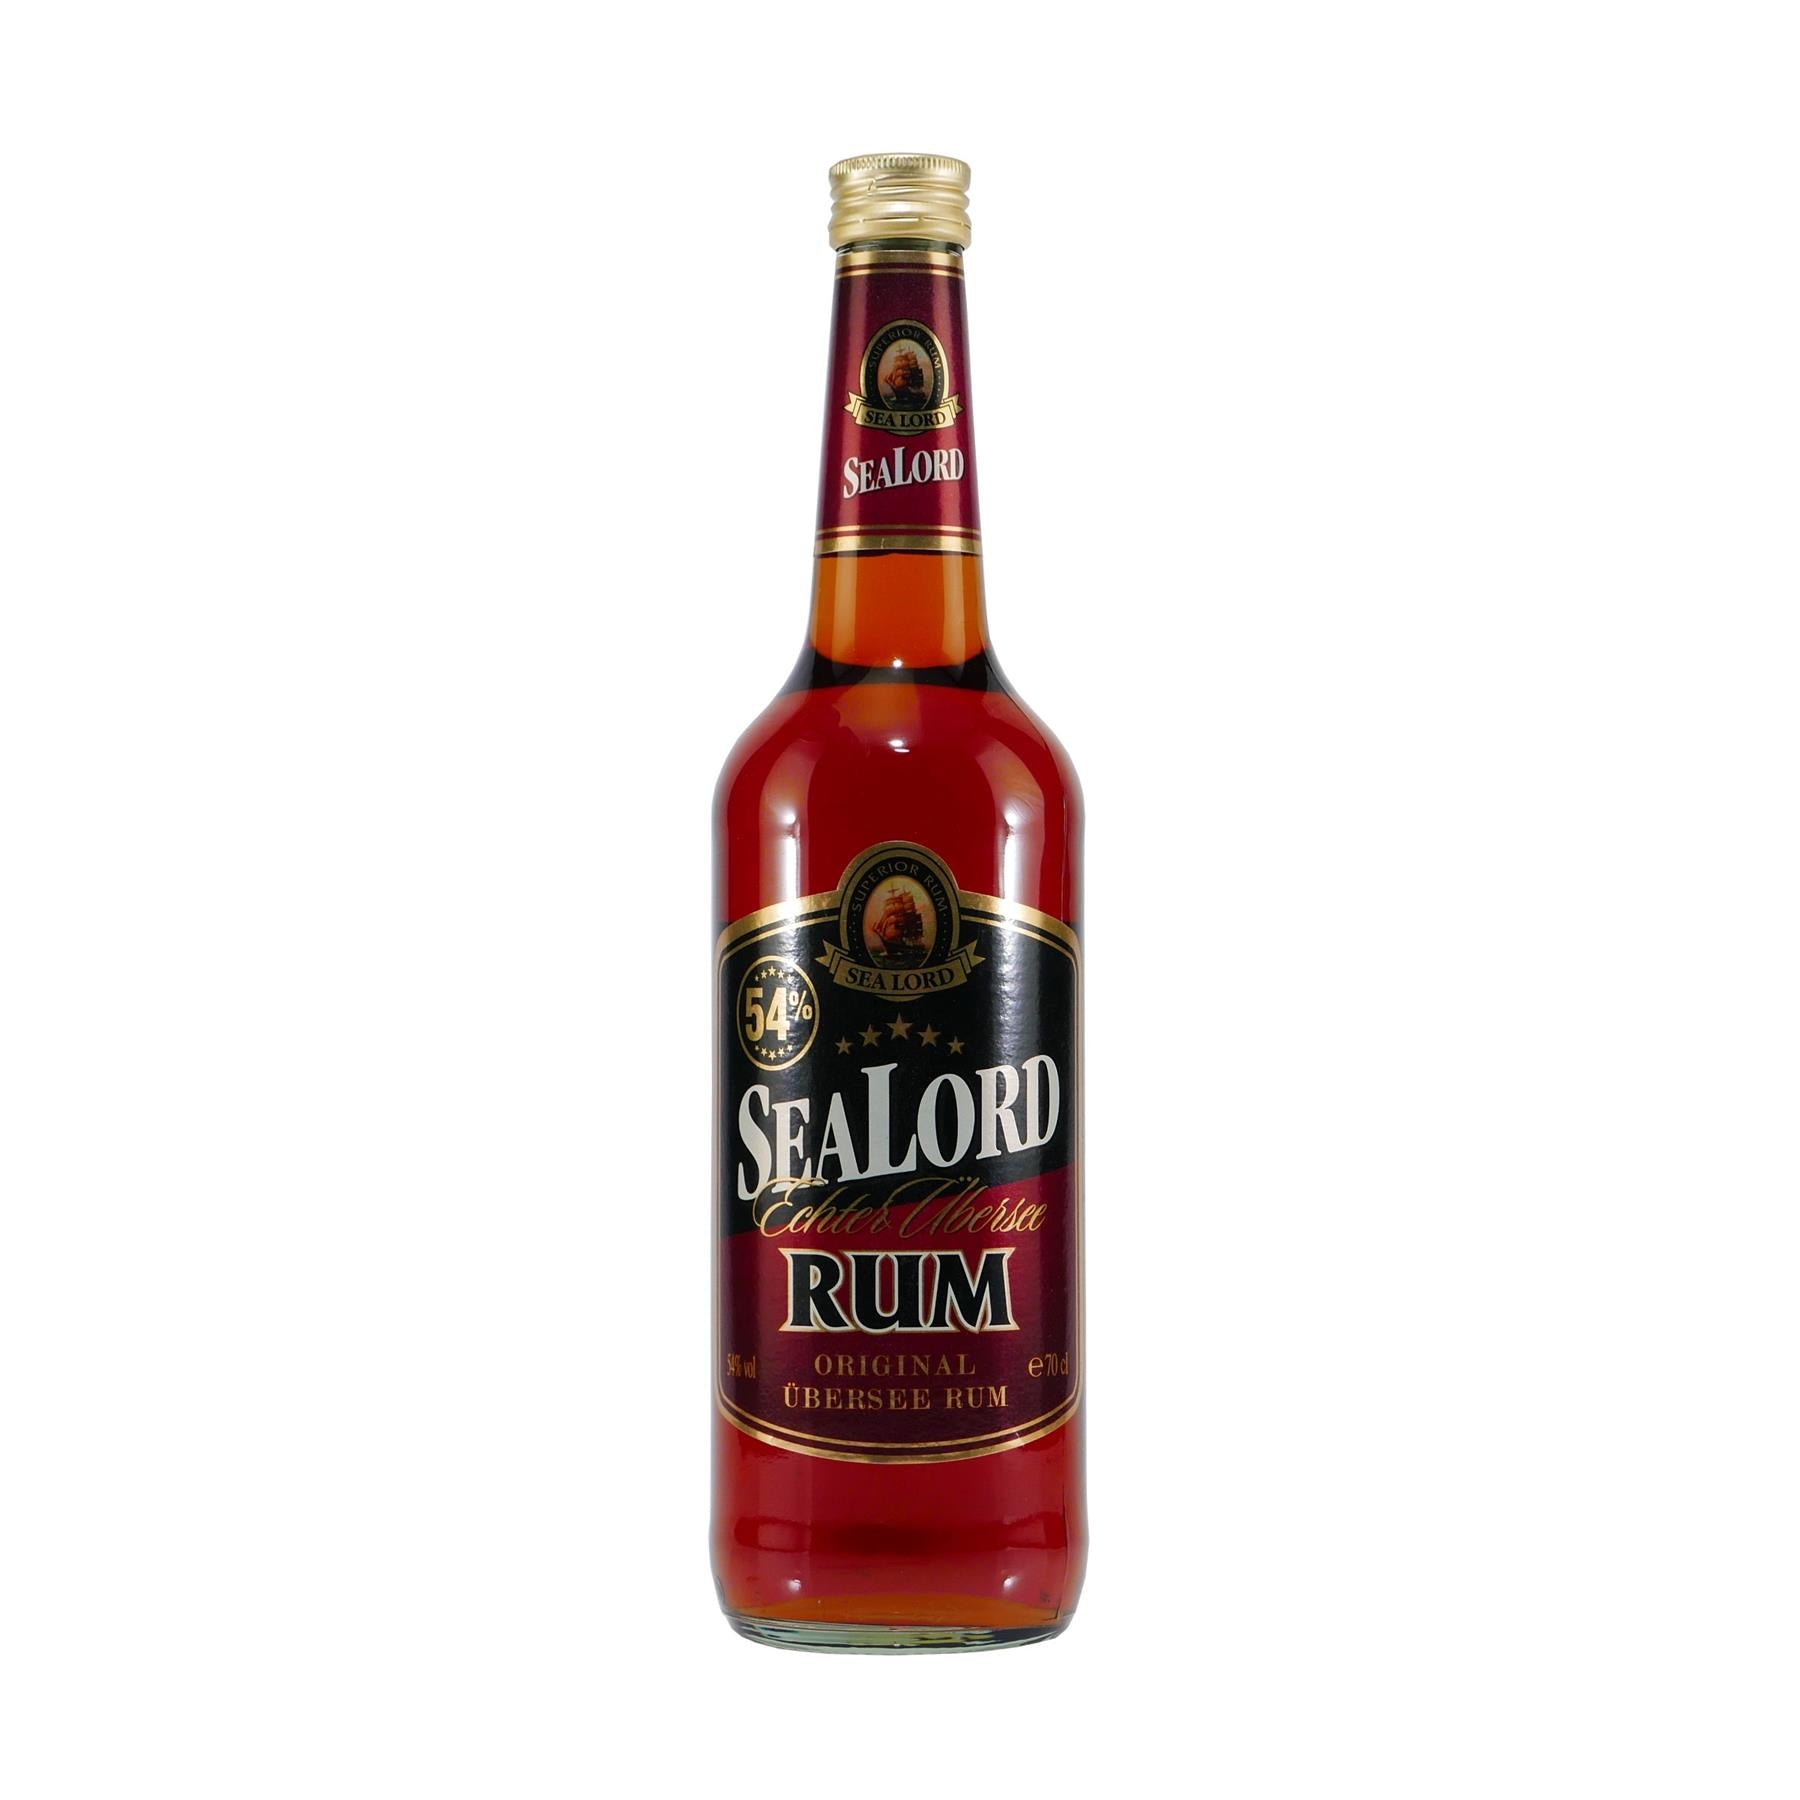 SEALORD Original Übersee Rum 54%vol.